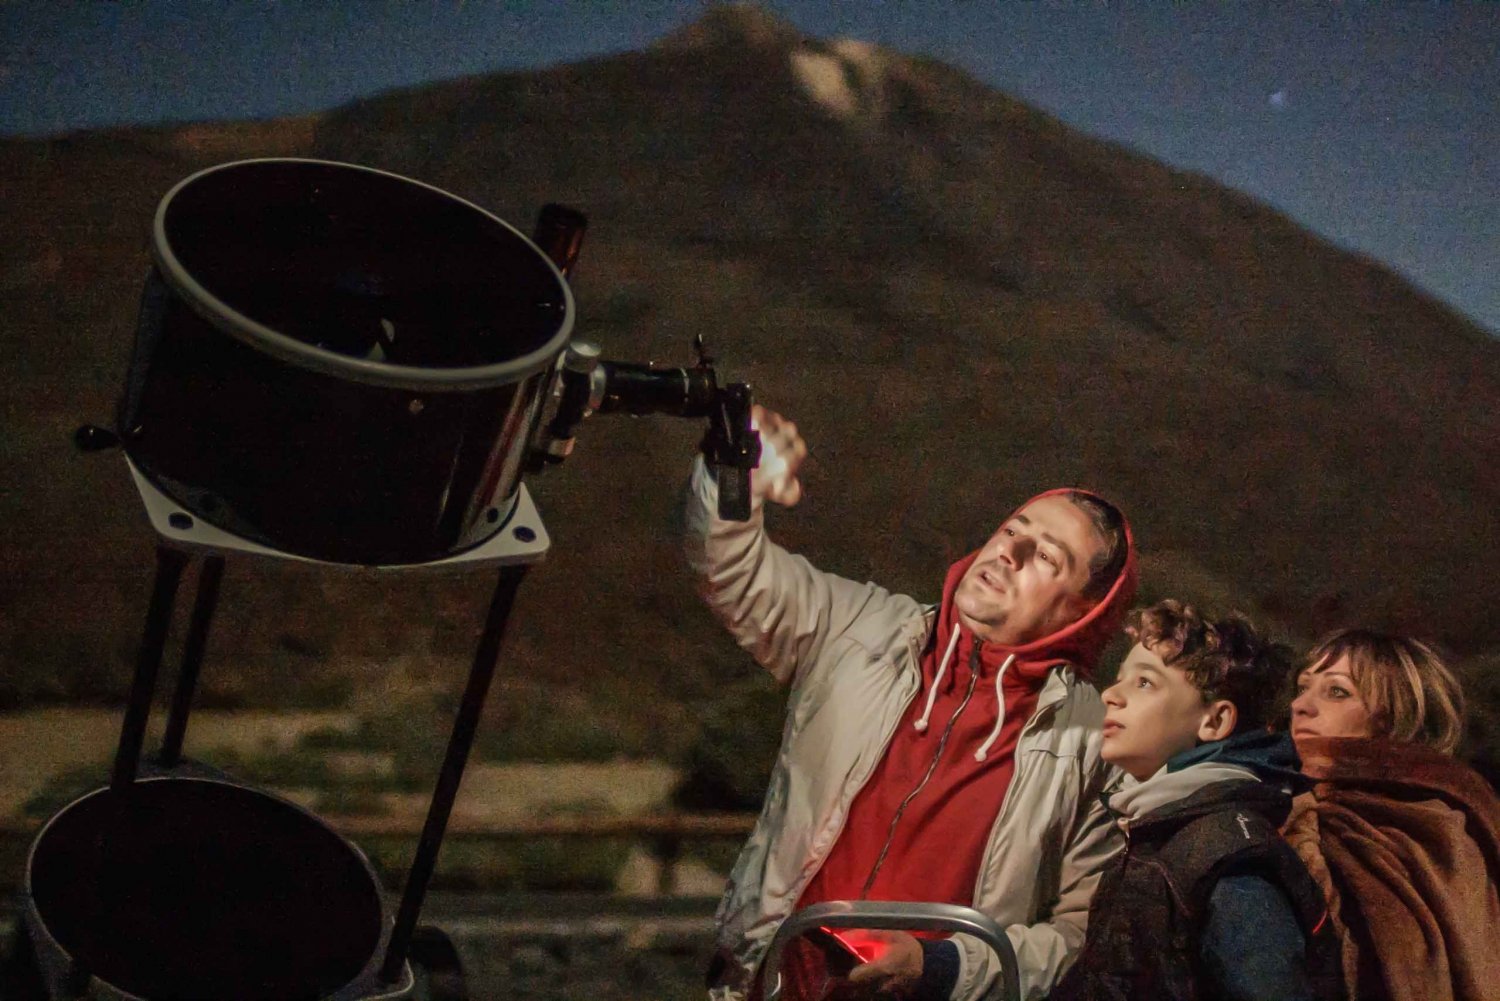 Teide nasjonalpark: Guidet stjernekikking med stort teleskop